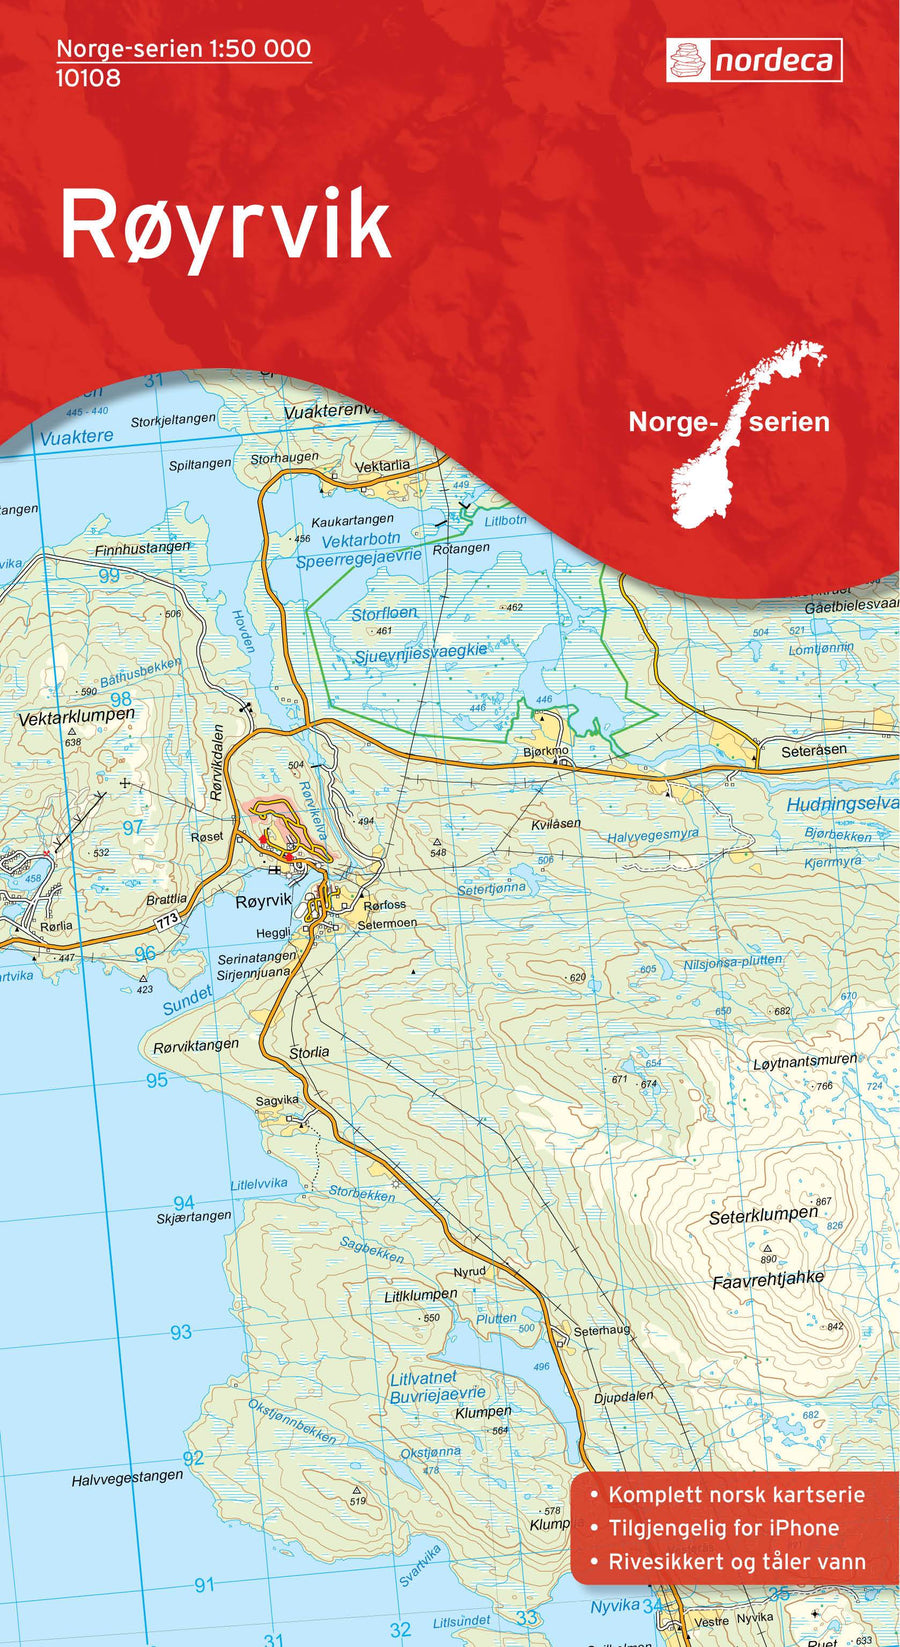 Carte de randonnée n° 10108 - Royrvik (Norvège) | Nordeca - Norge-serien carte pliée Nordeca 